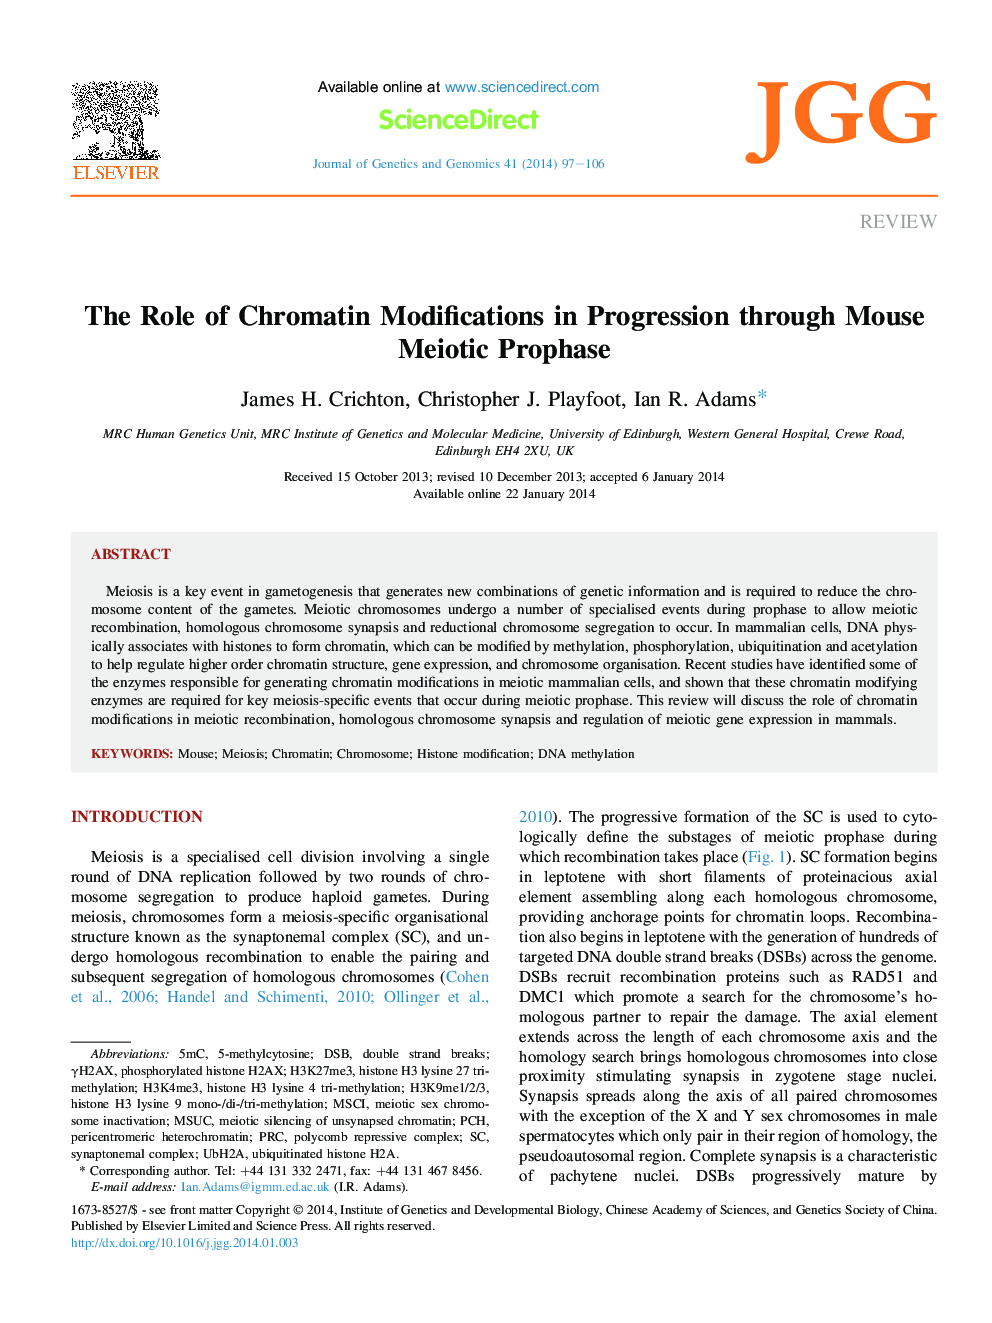 نقش تغییرات کروماتین در پیشرفت از طریق پروتئین مایوتیک ماوس 